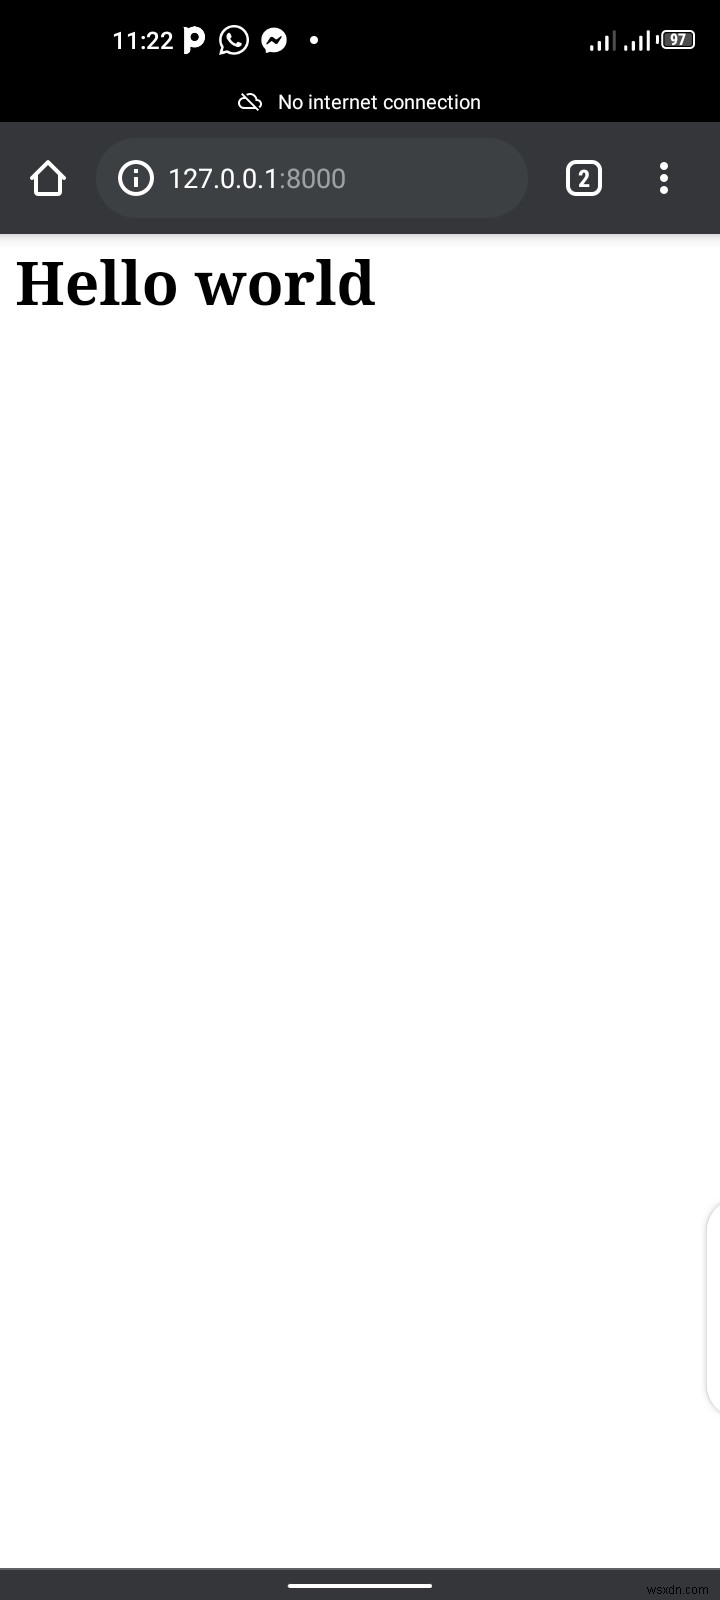 কীভাবে আপনার ফোনে একটি ওয়েব অ্যাপ তৈরি করবেন - পাইথন এবং পাইড্রয়েড অ্যান্ড্রয়েড অ্যাপ টিউটোরিয়াল 